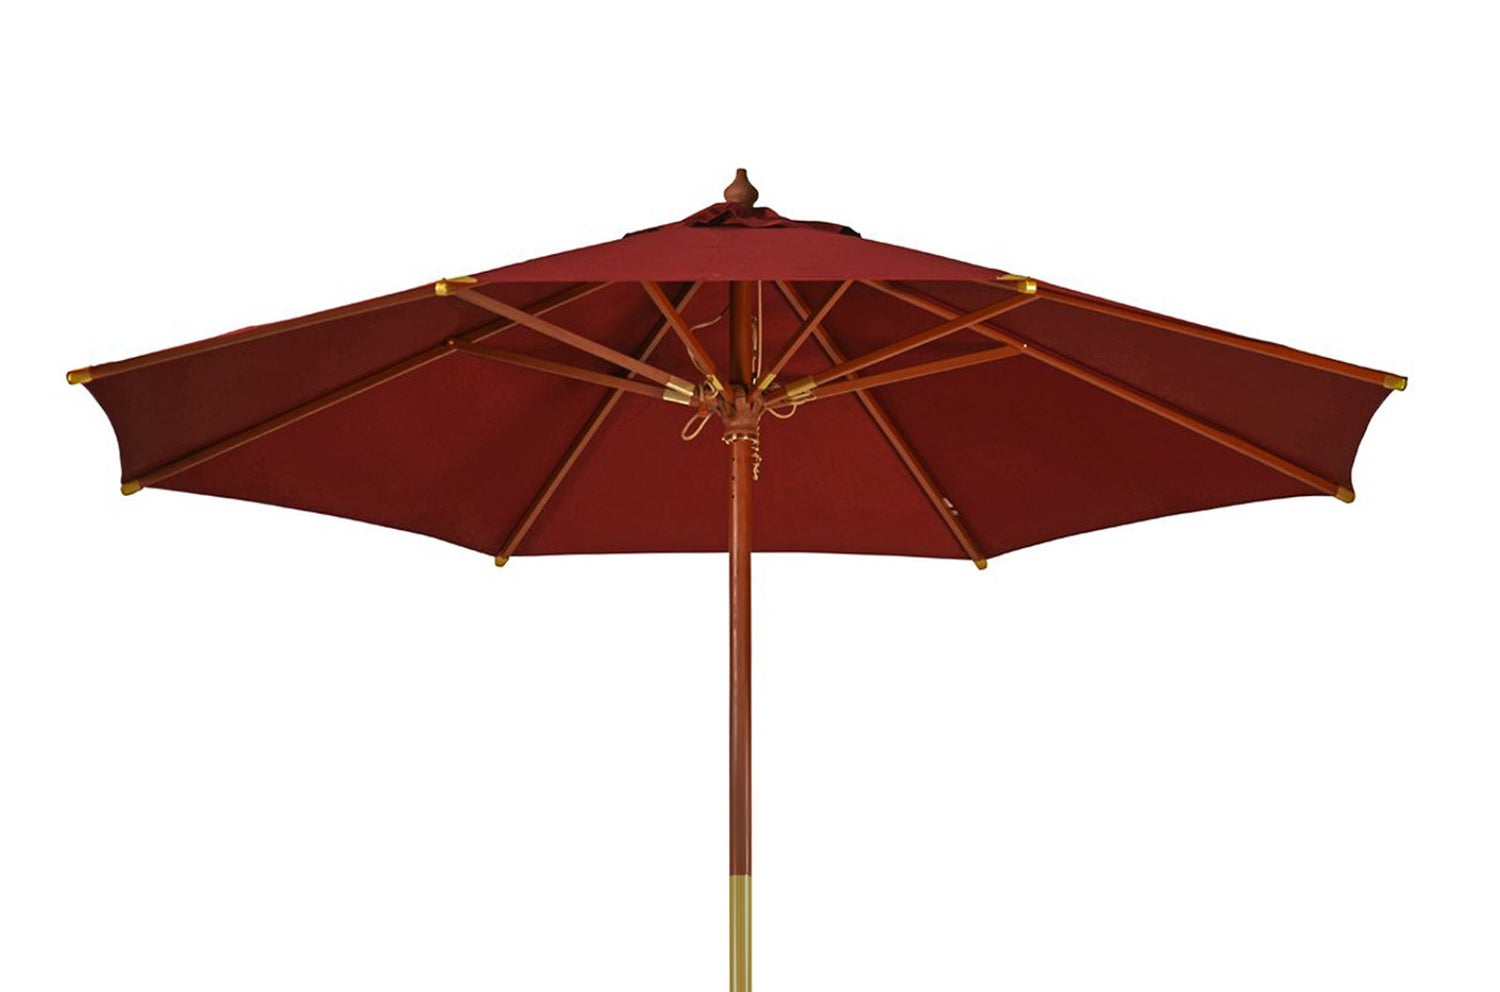 Sonnenschirm 240 cm rot bordeaux kippbar Windauslass UV-Schutz 50